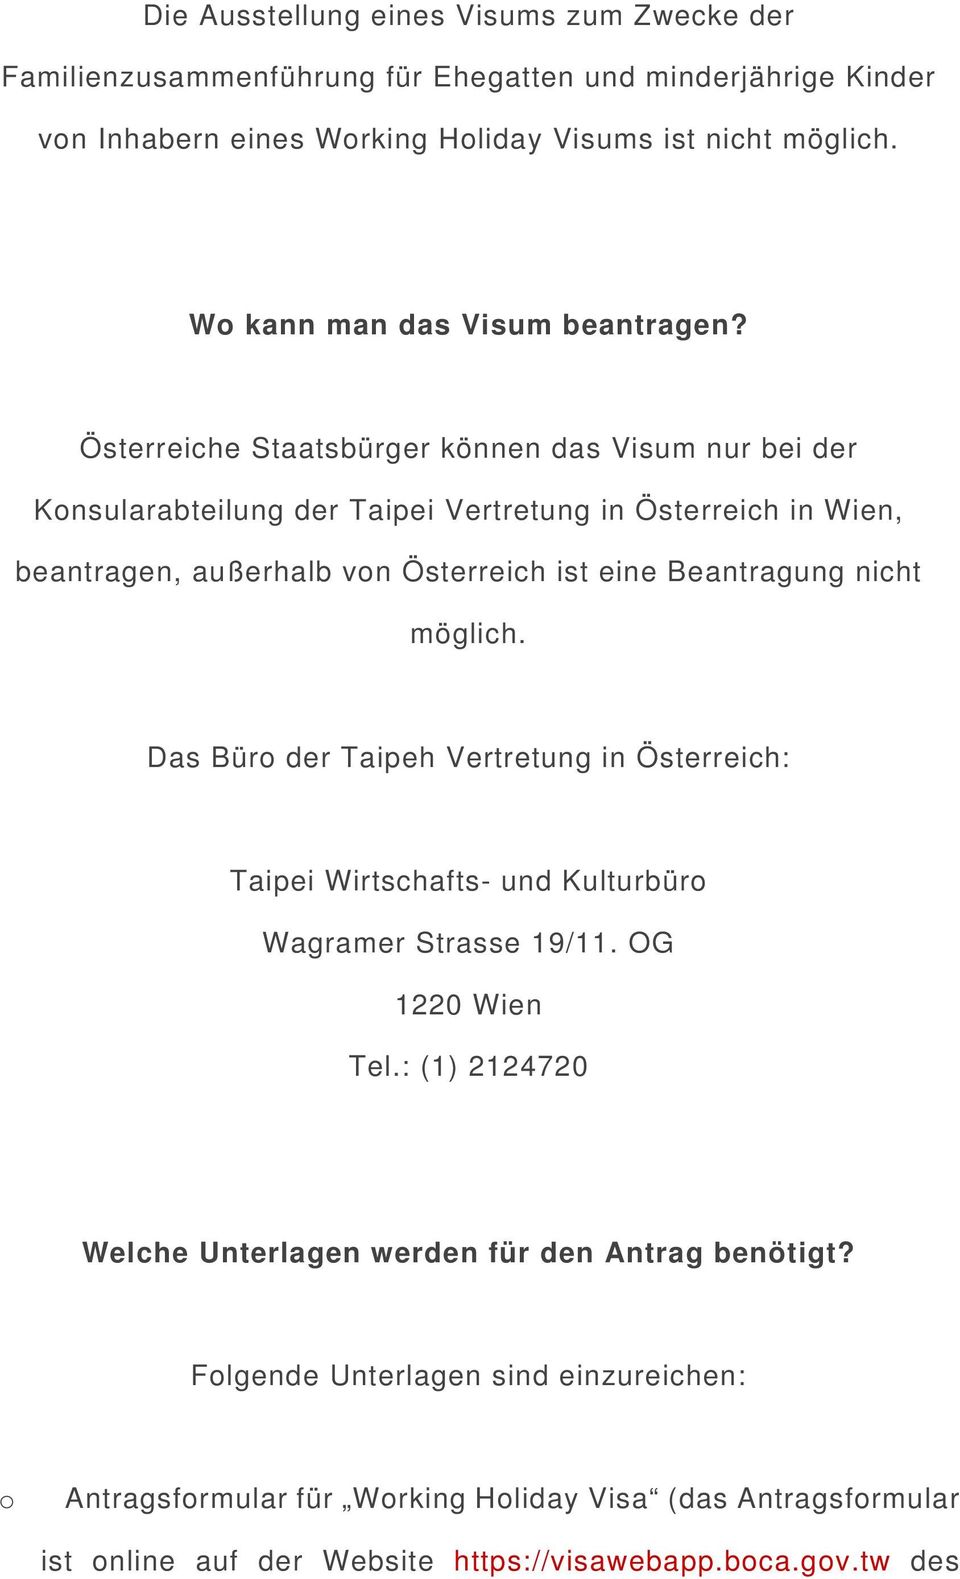 Österreiche Staatsbürger können das Visum nur bei der Knsularabteilung der Taipei Vertretung in Österreich in Wien, beantragen, außerhalb vn Österreich ist eine Beantragung nicht